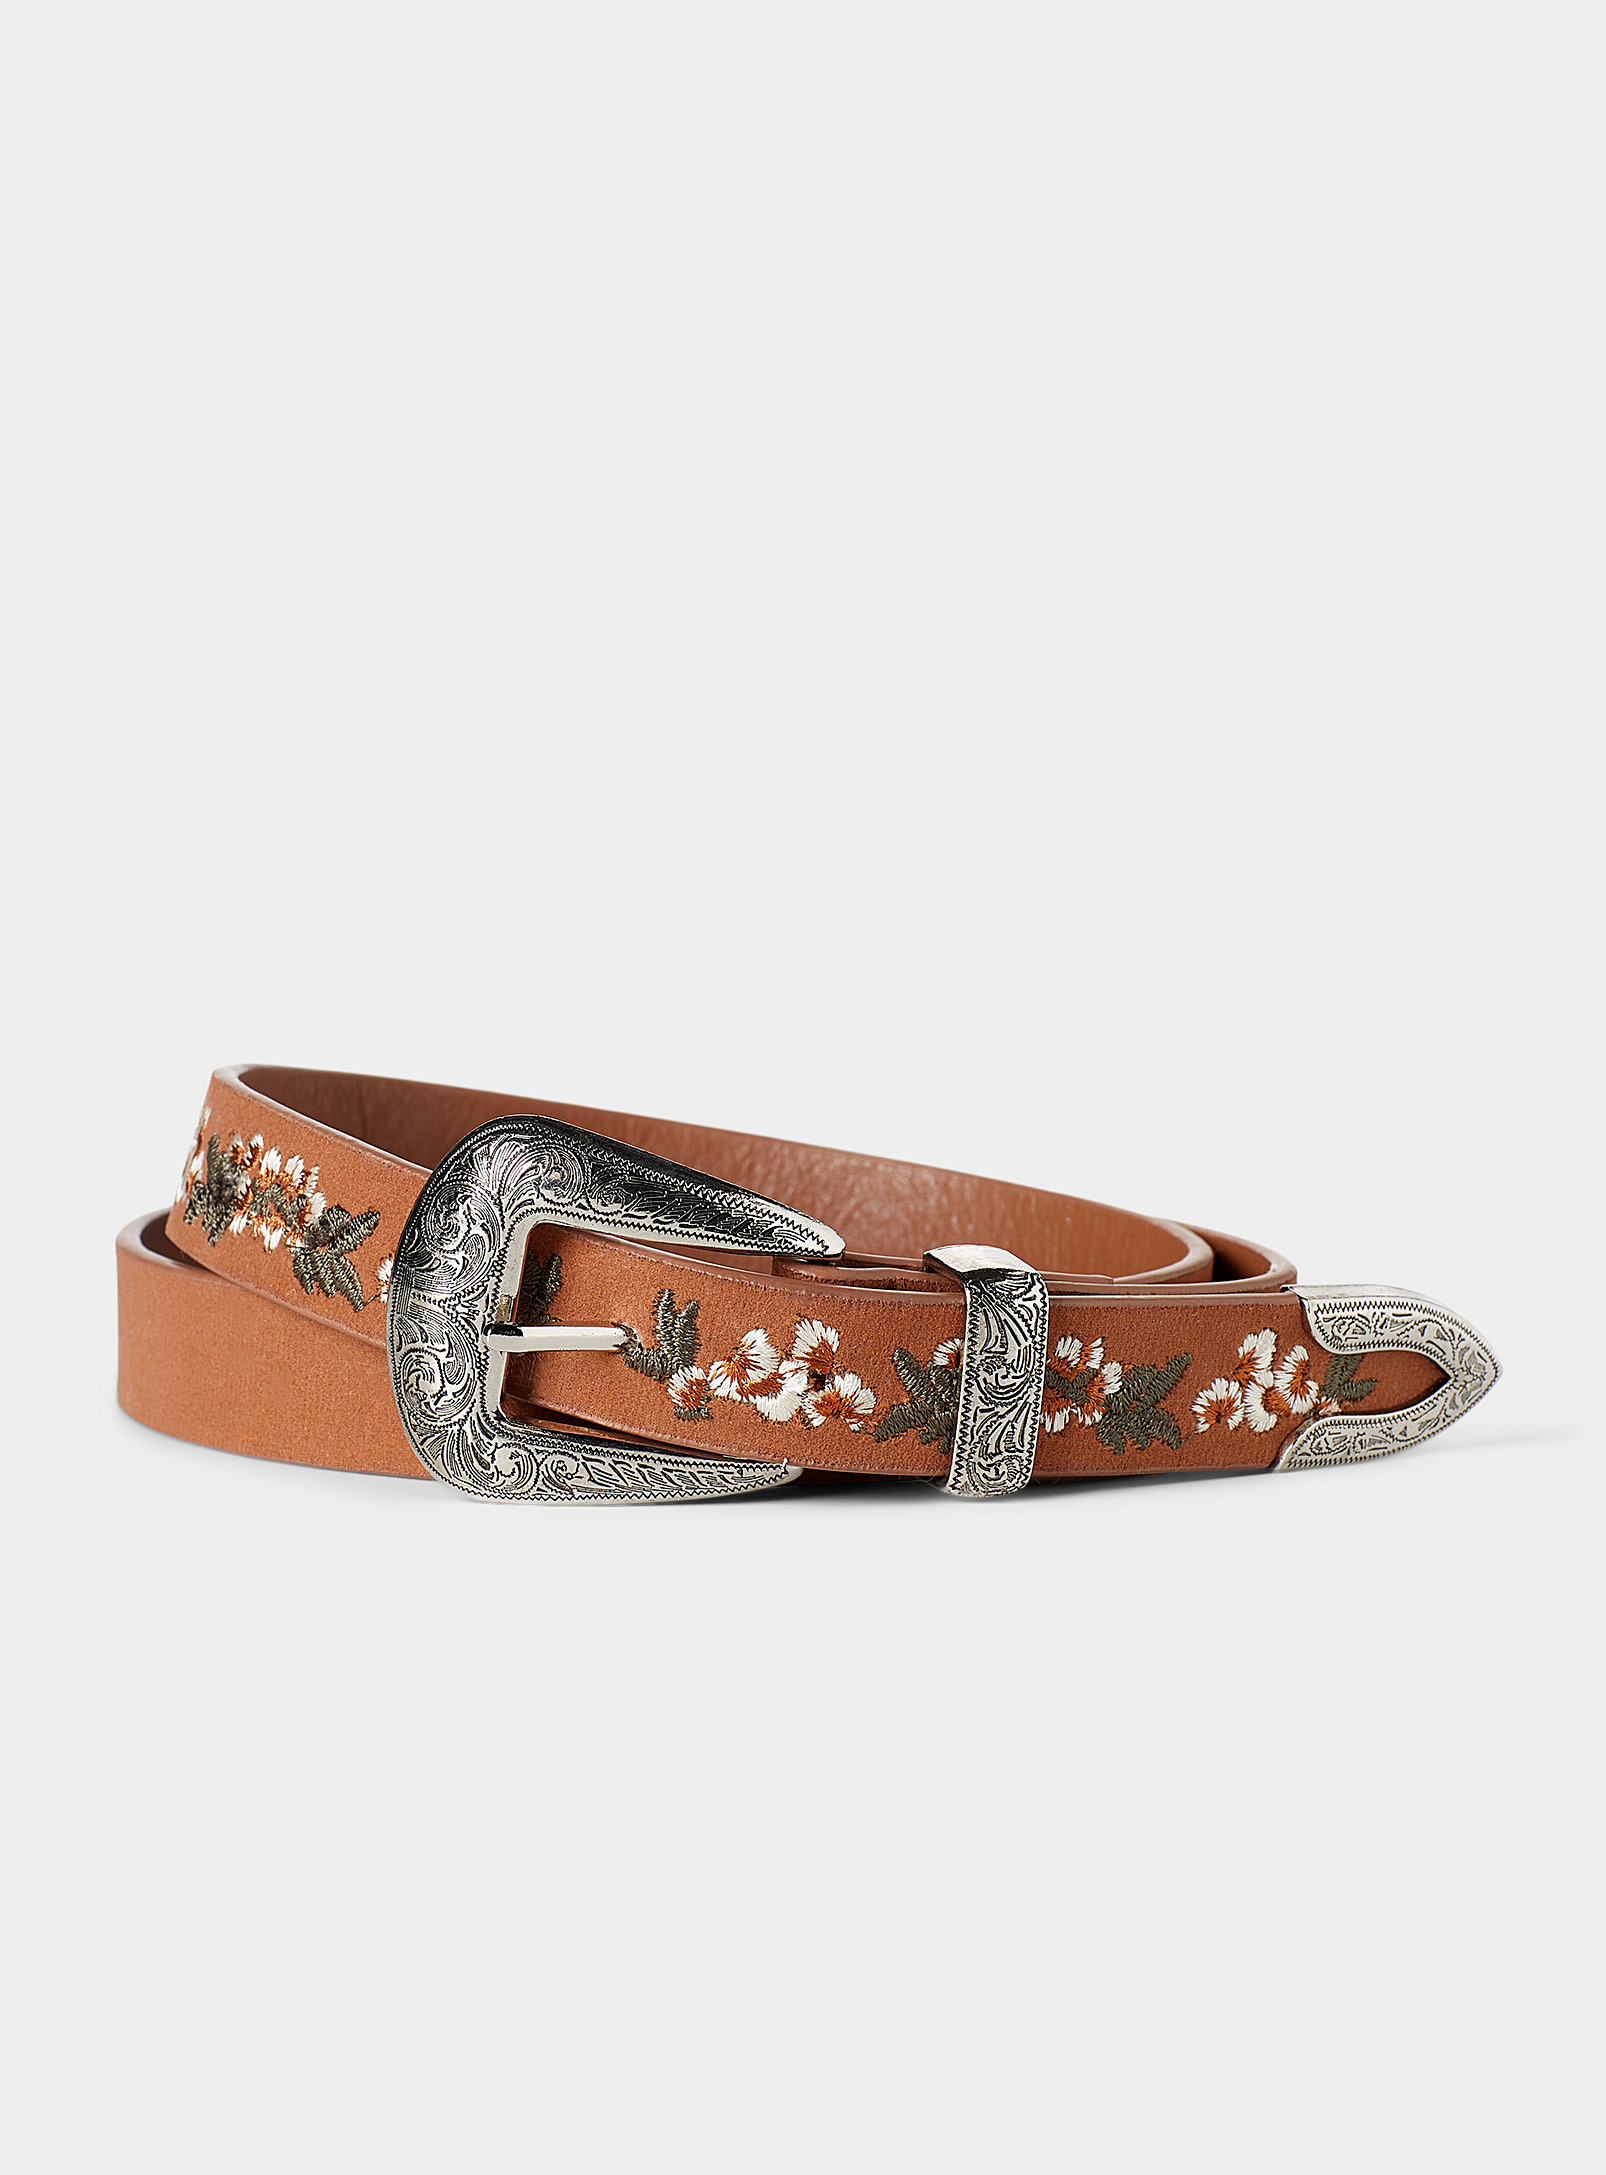 Simons - Women's Western embroidered flower belt